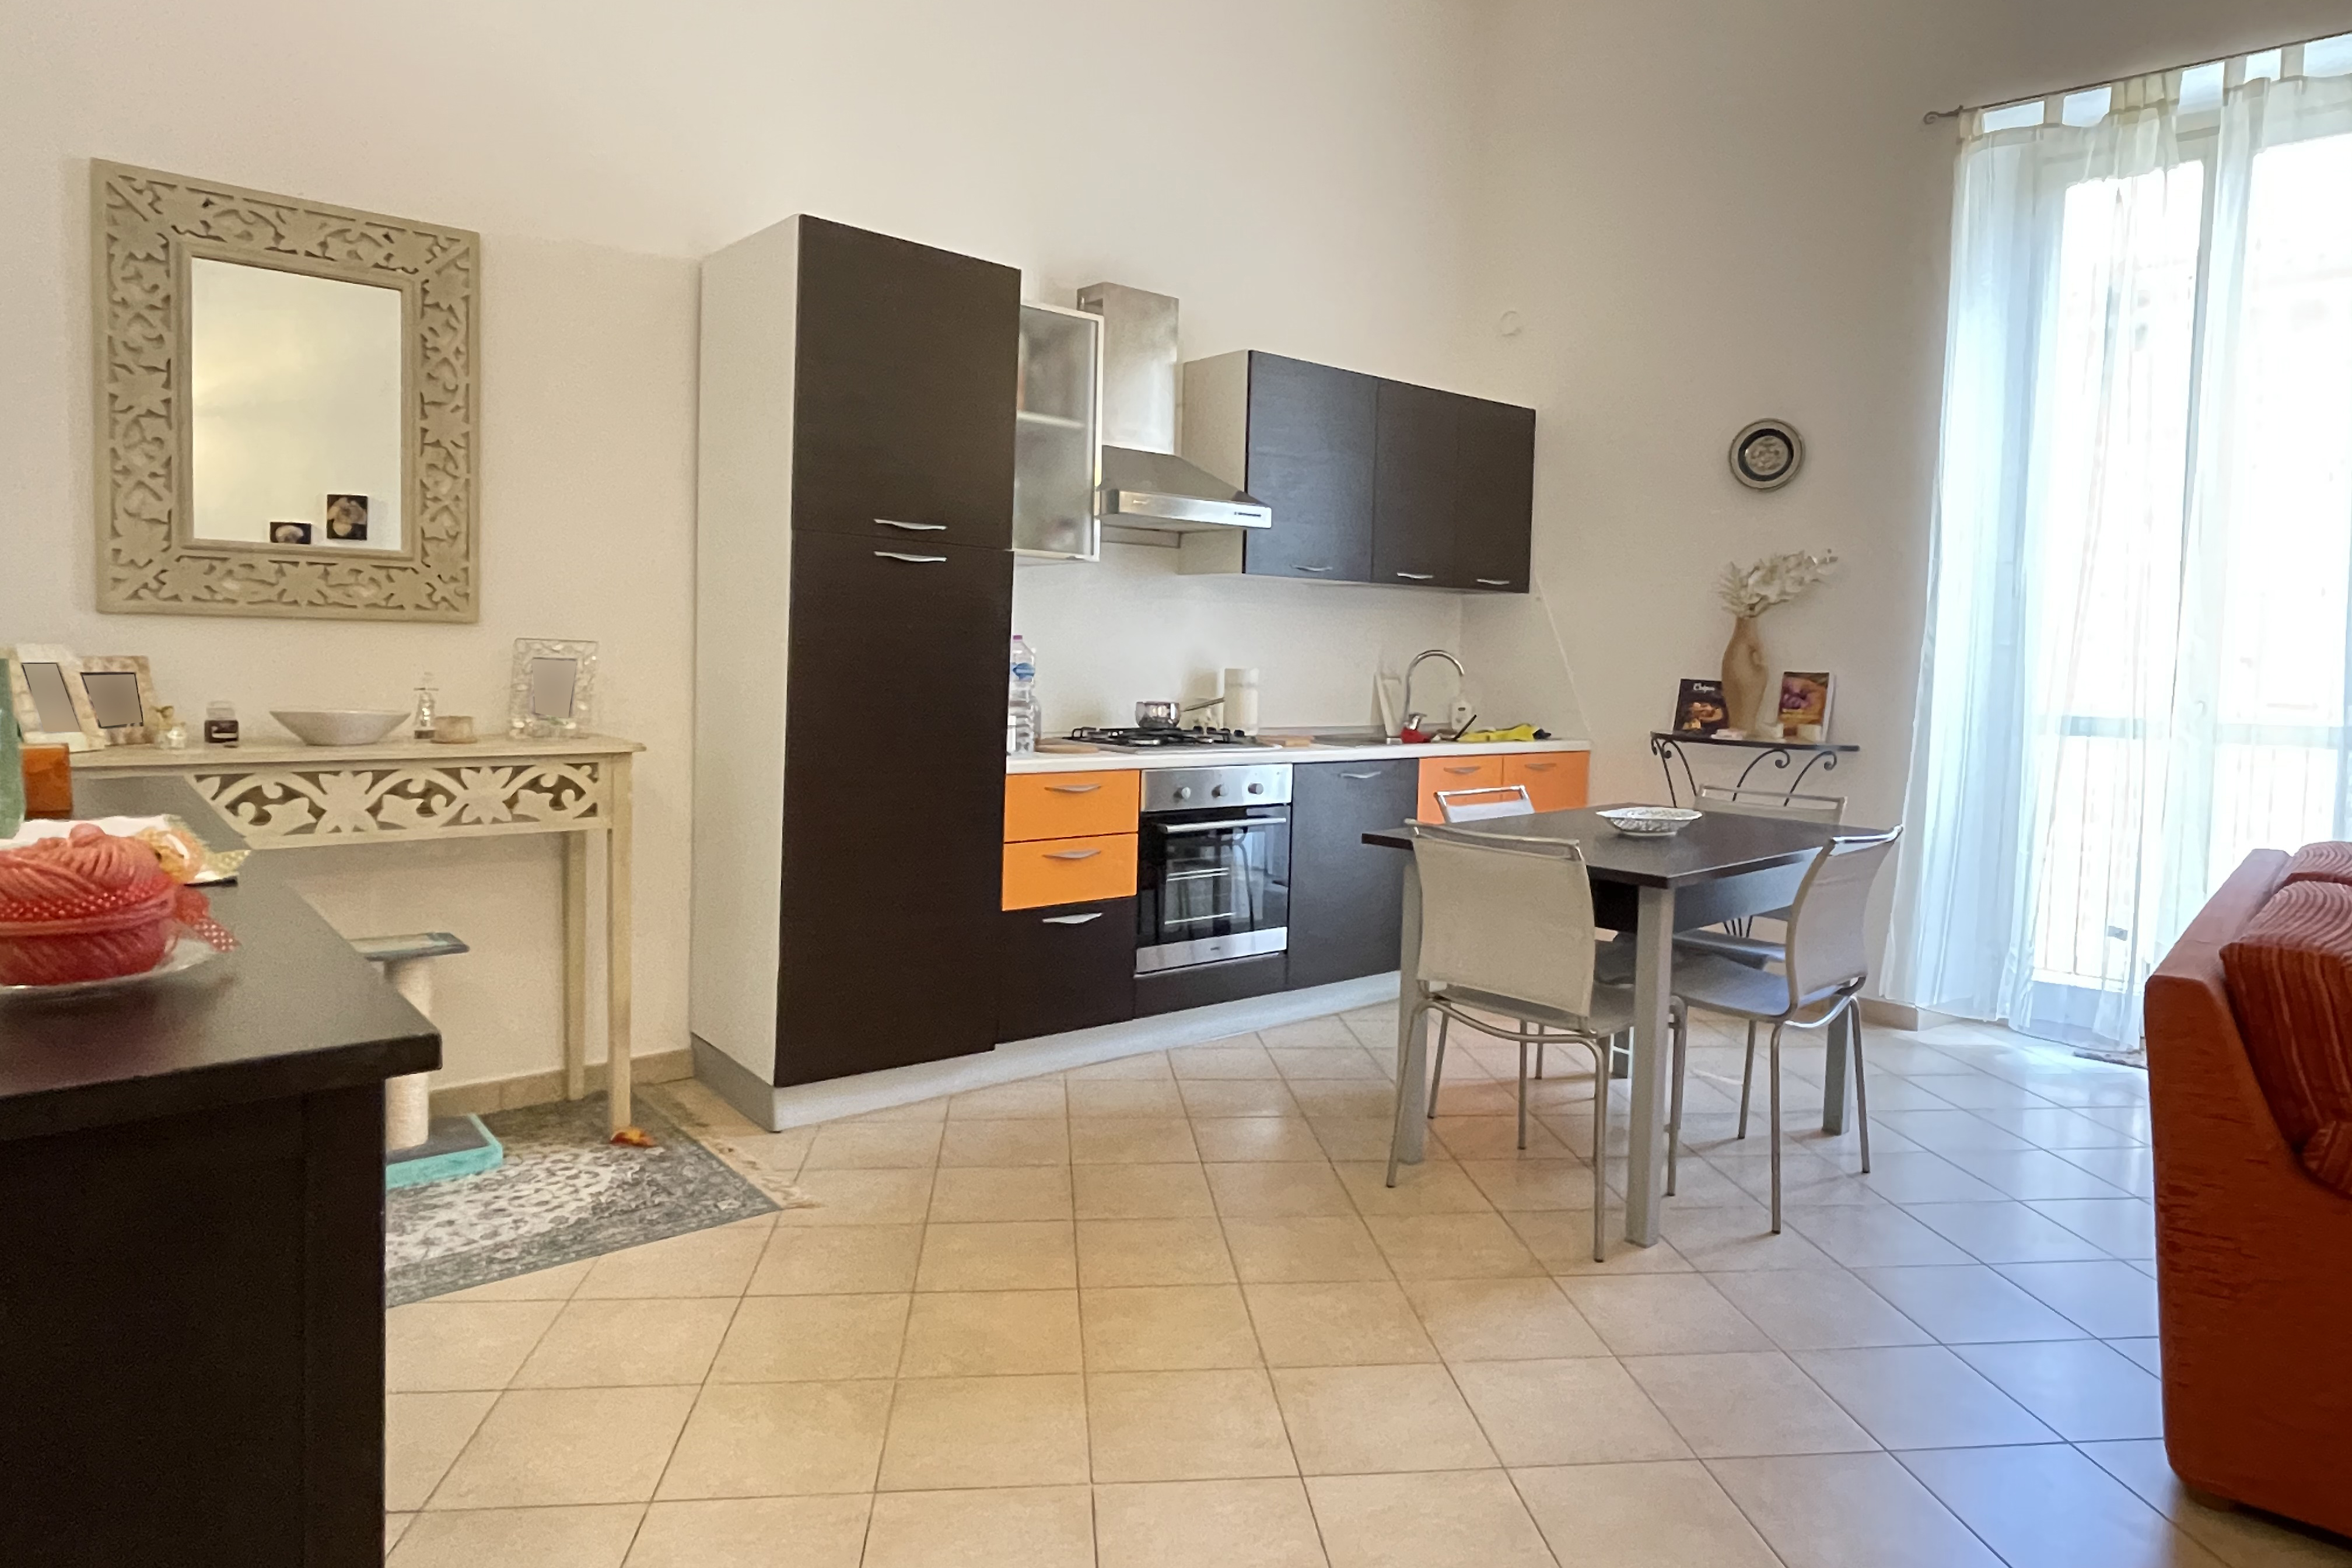 Vendita appartamento locato Pesaro - Zona Centro Storico (AP674)